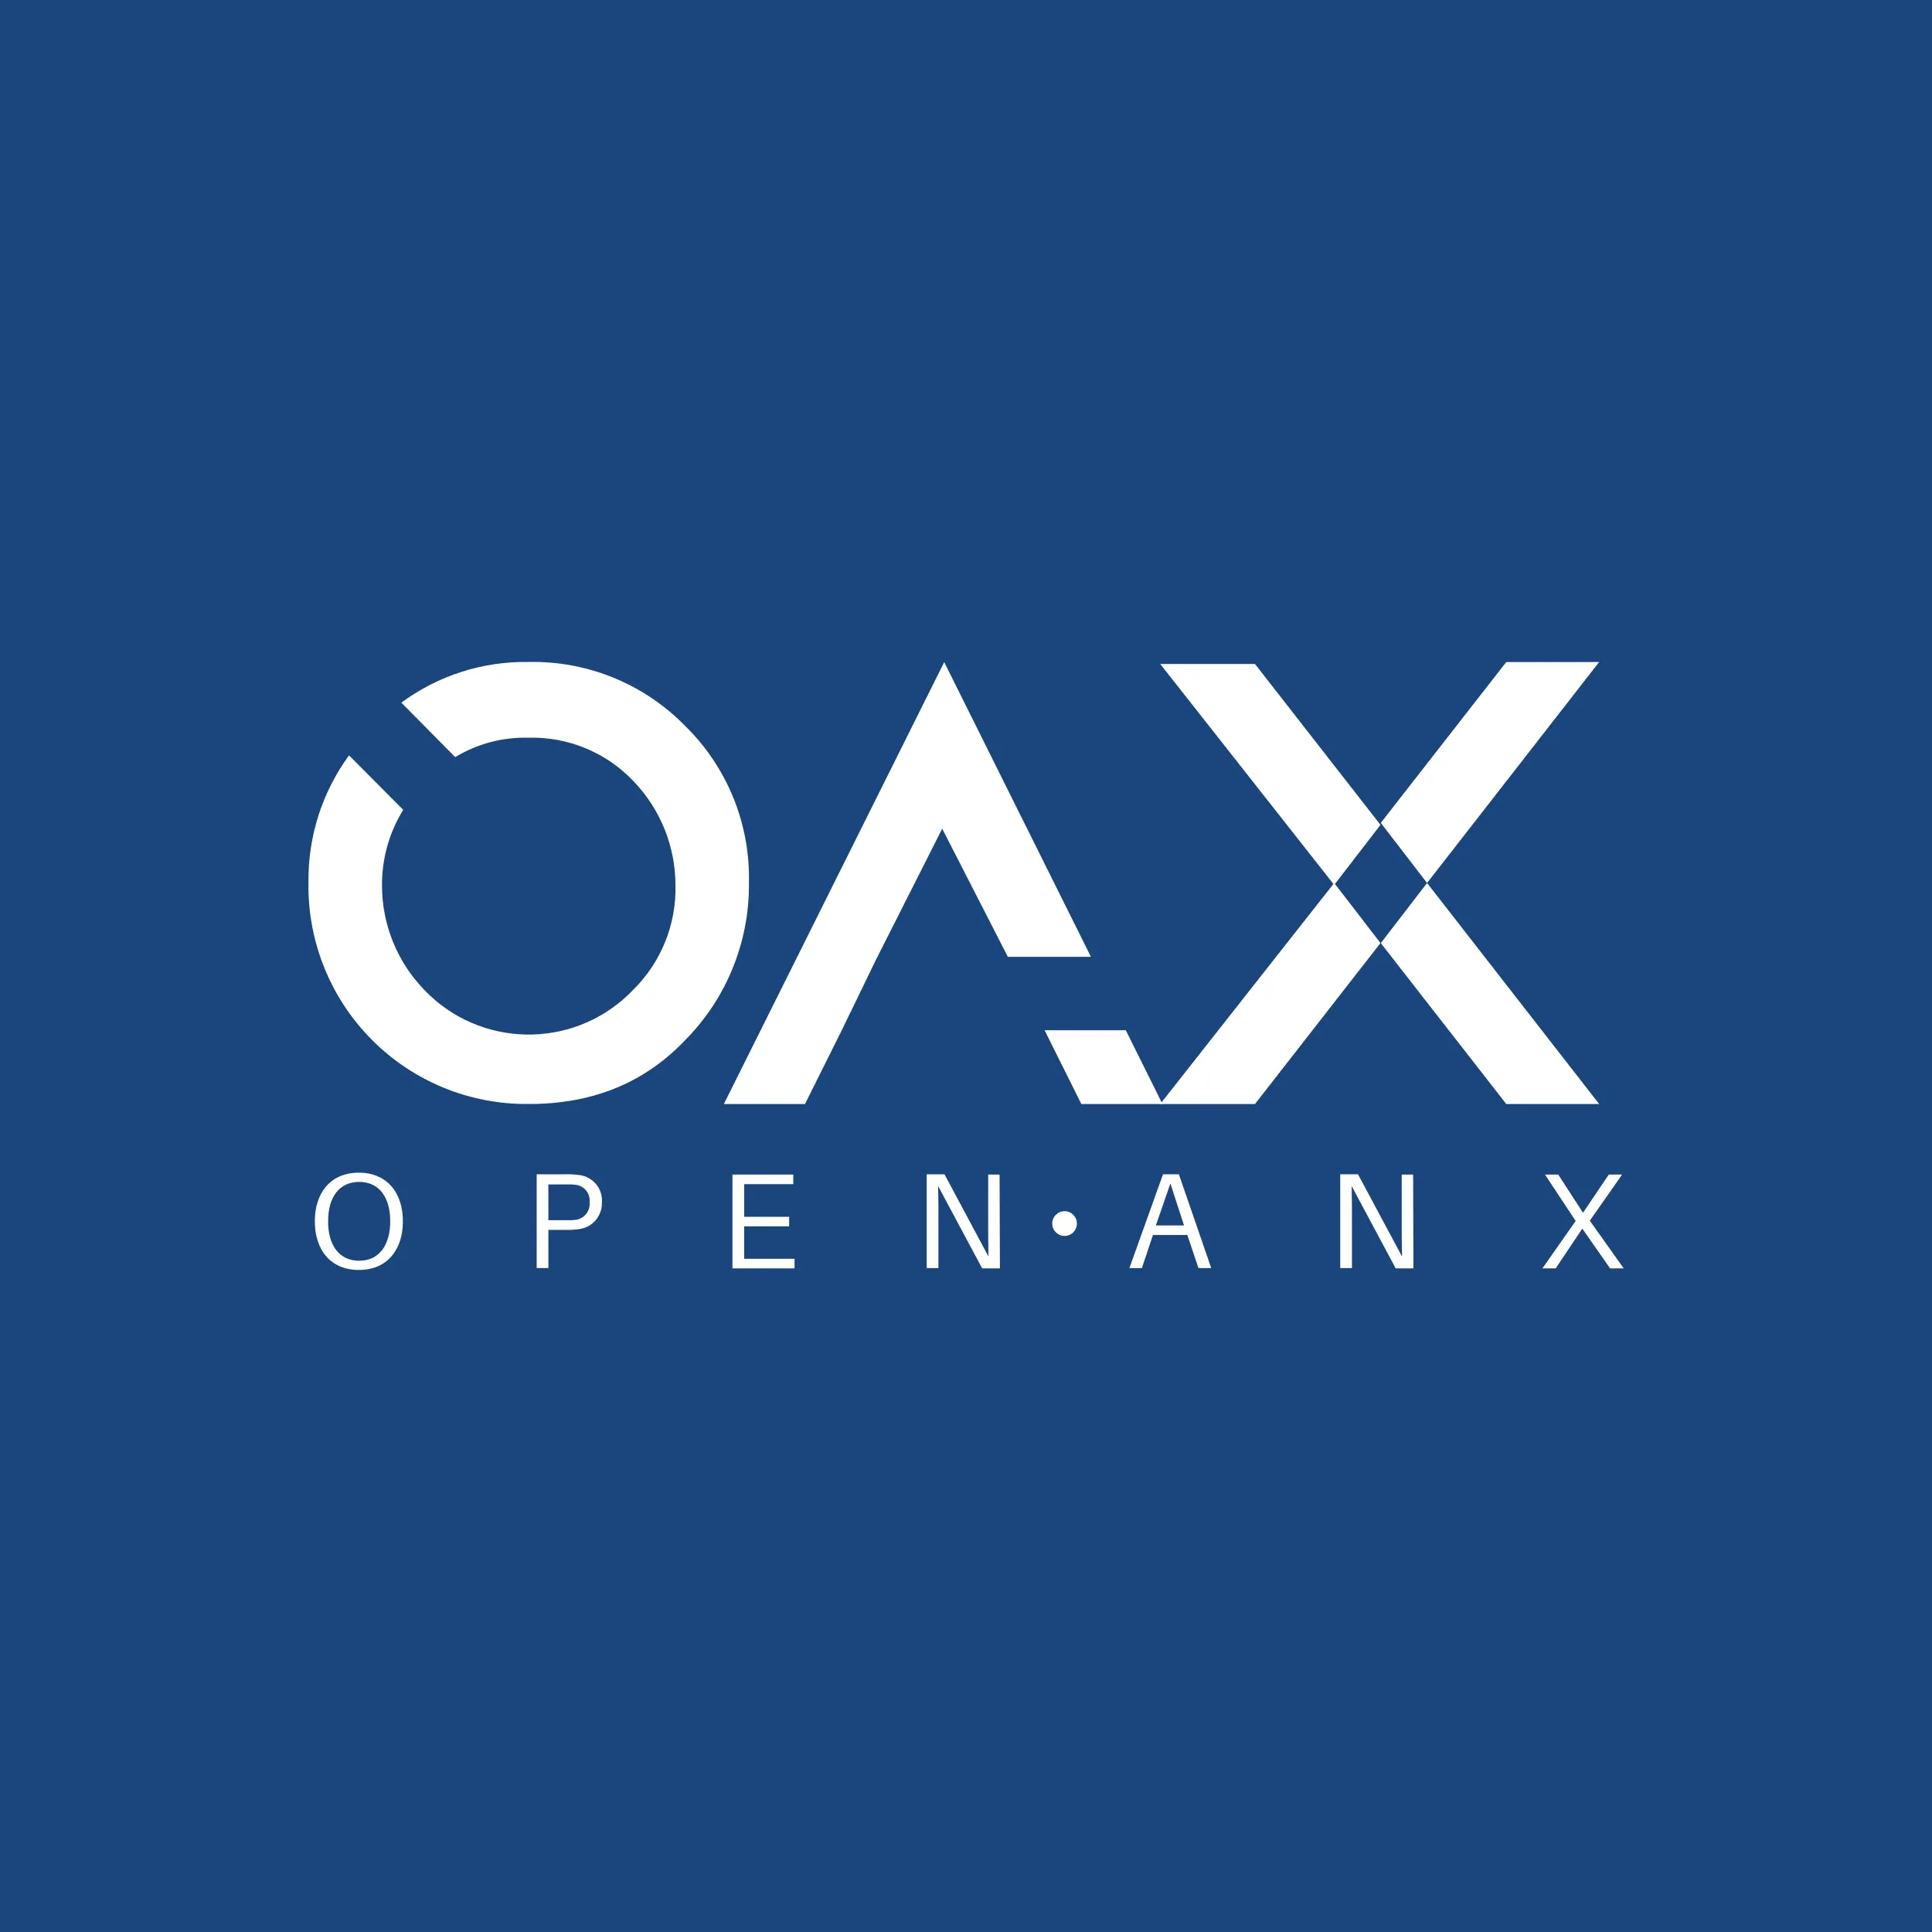 OAX svg icon